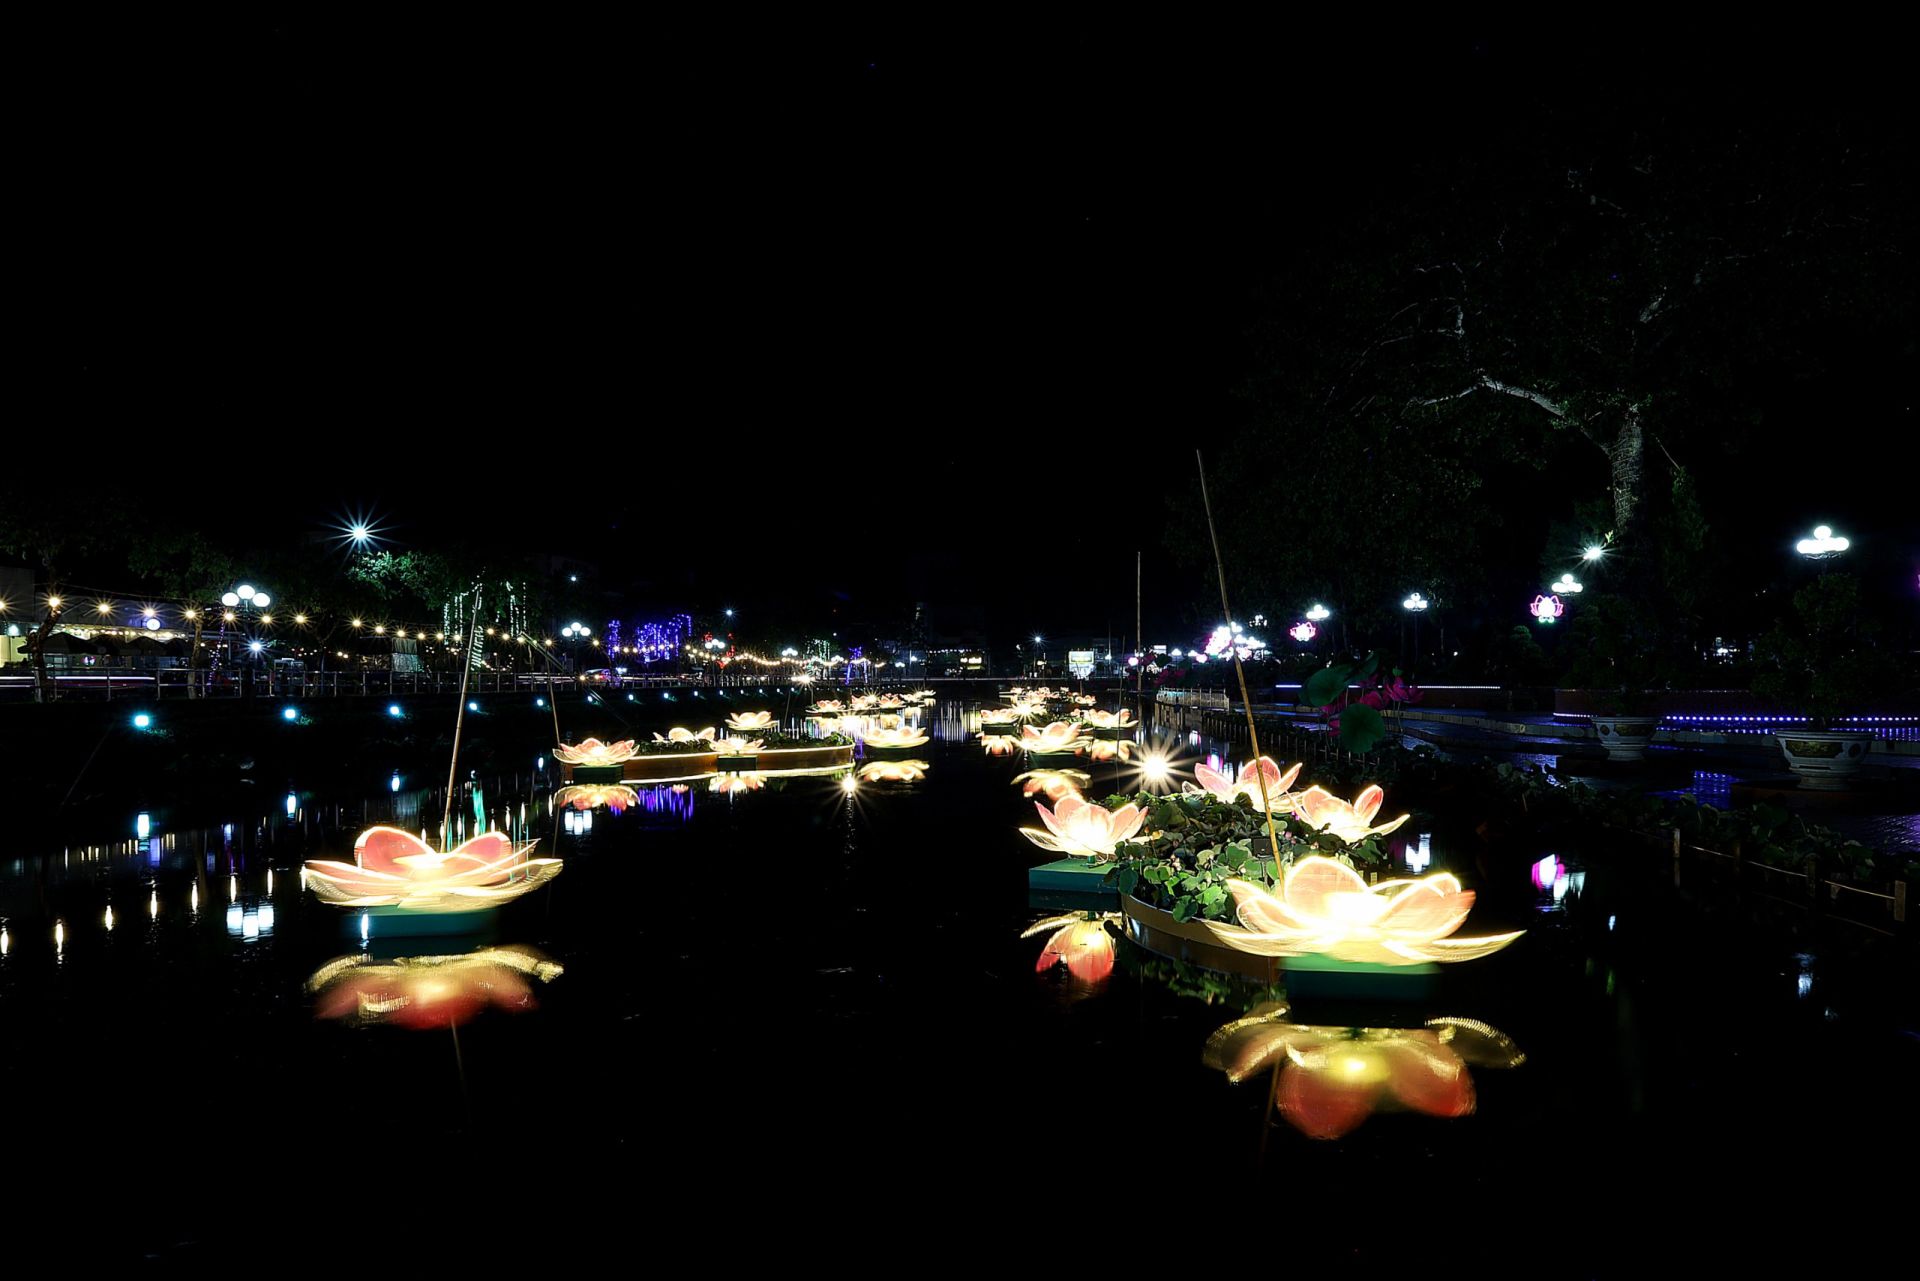 Khu vực tổ chức Lễ hội sen được đầu tư công phu, tạo ánh sáng, cảnh quan đẹp mắt.